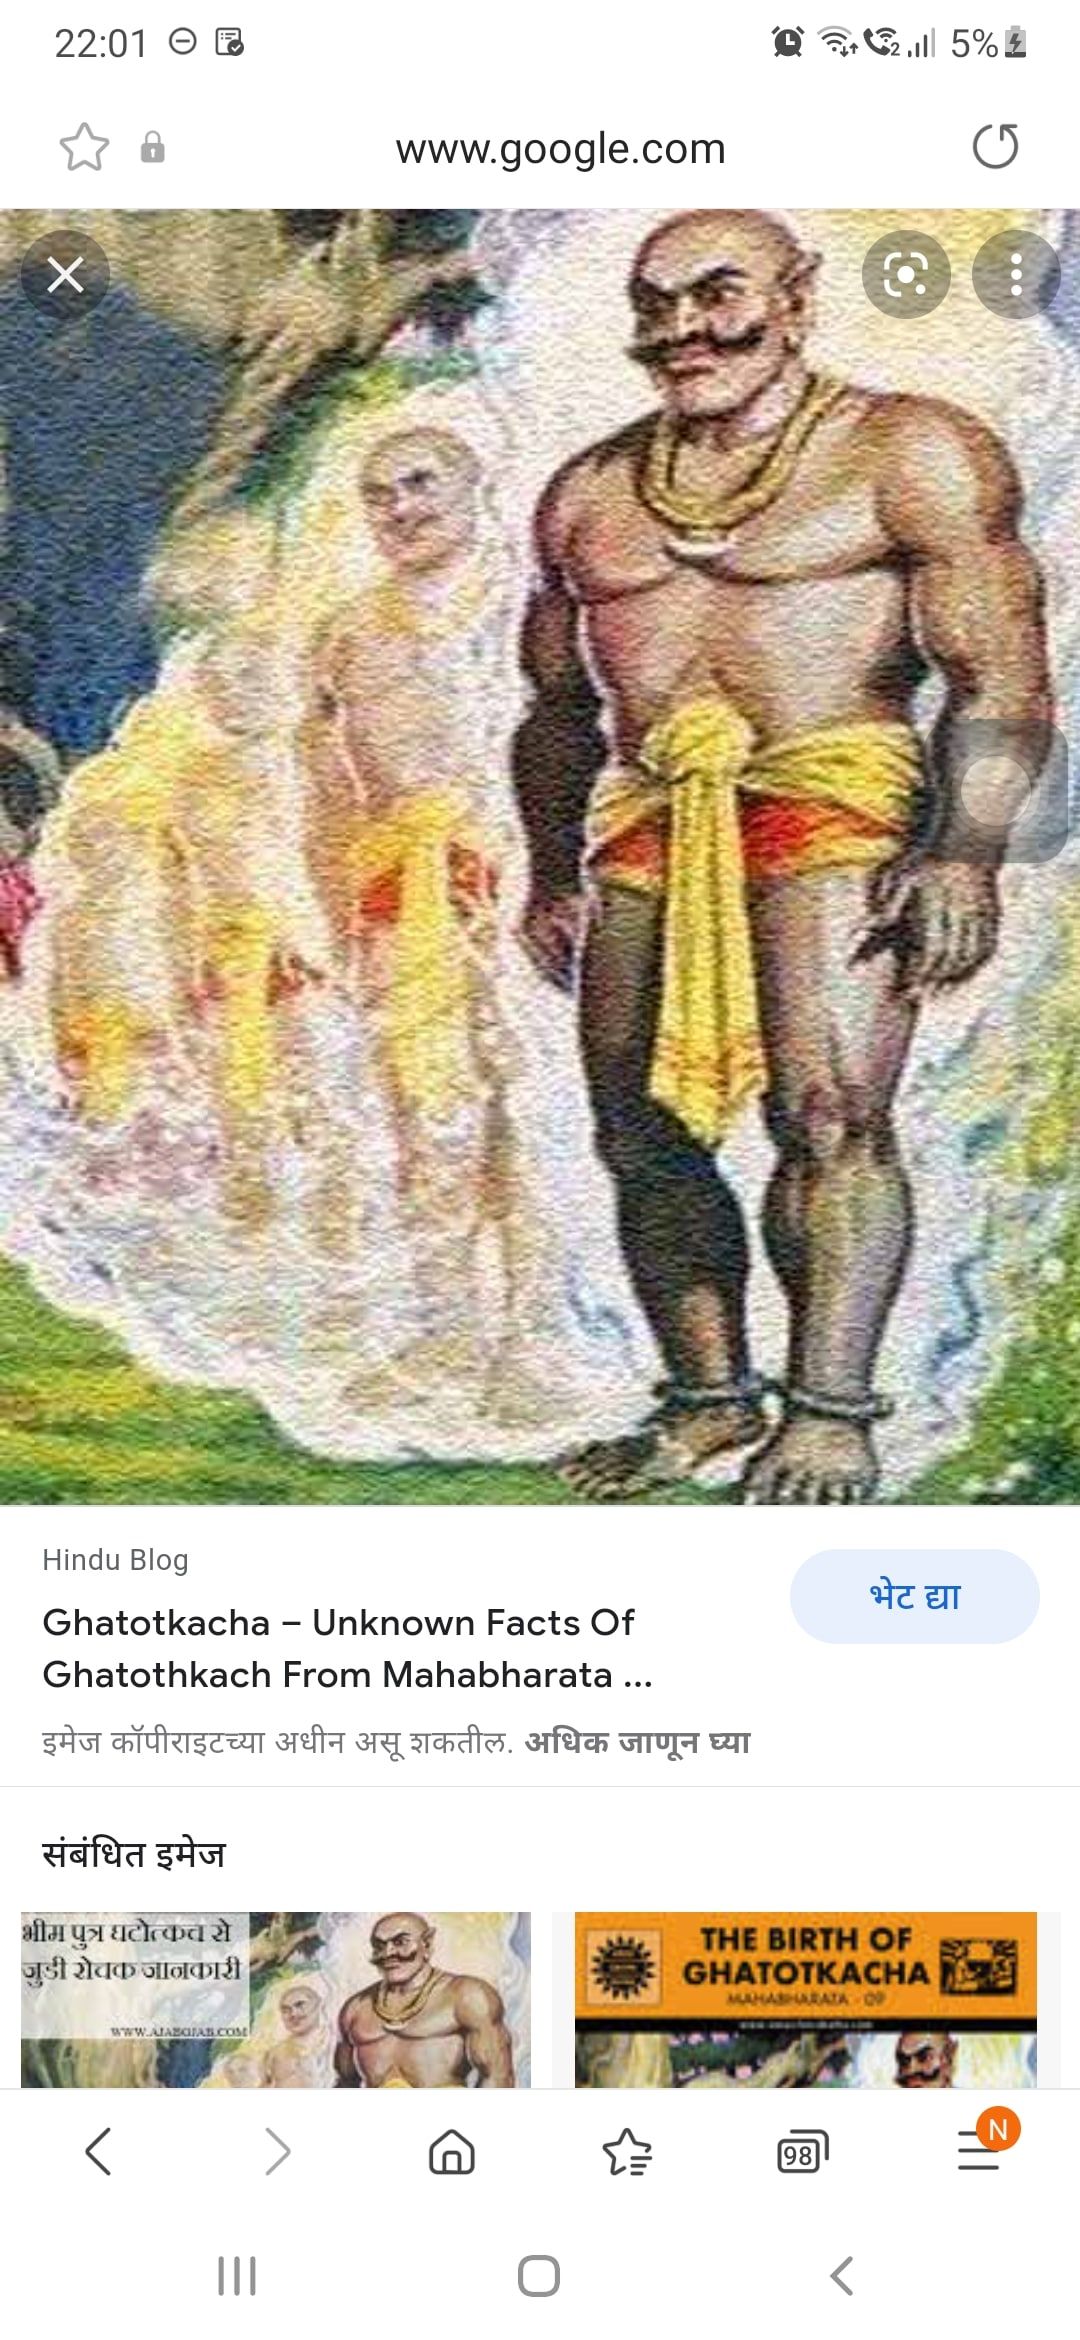 Ghatoth katchh kaha hei? 1